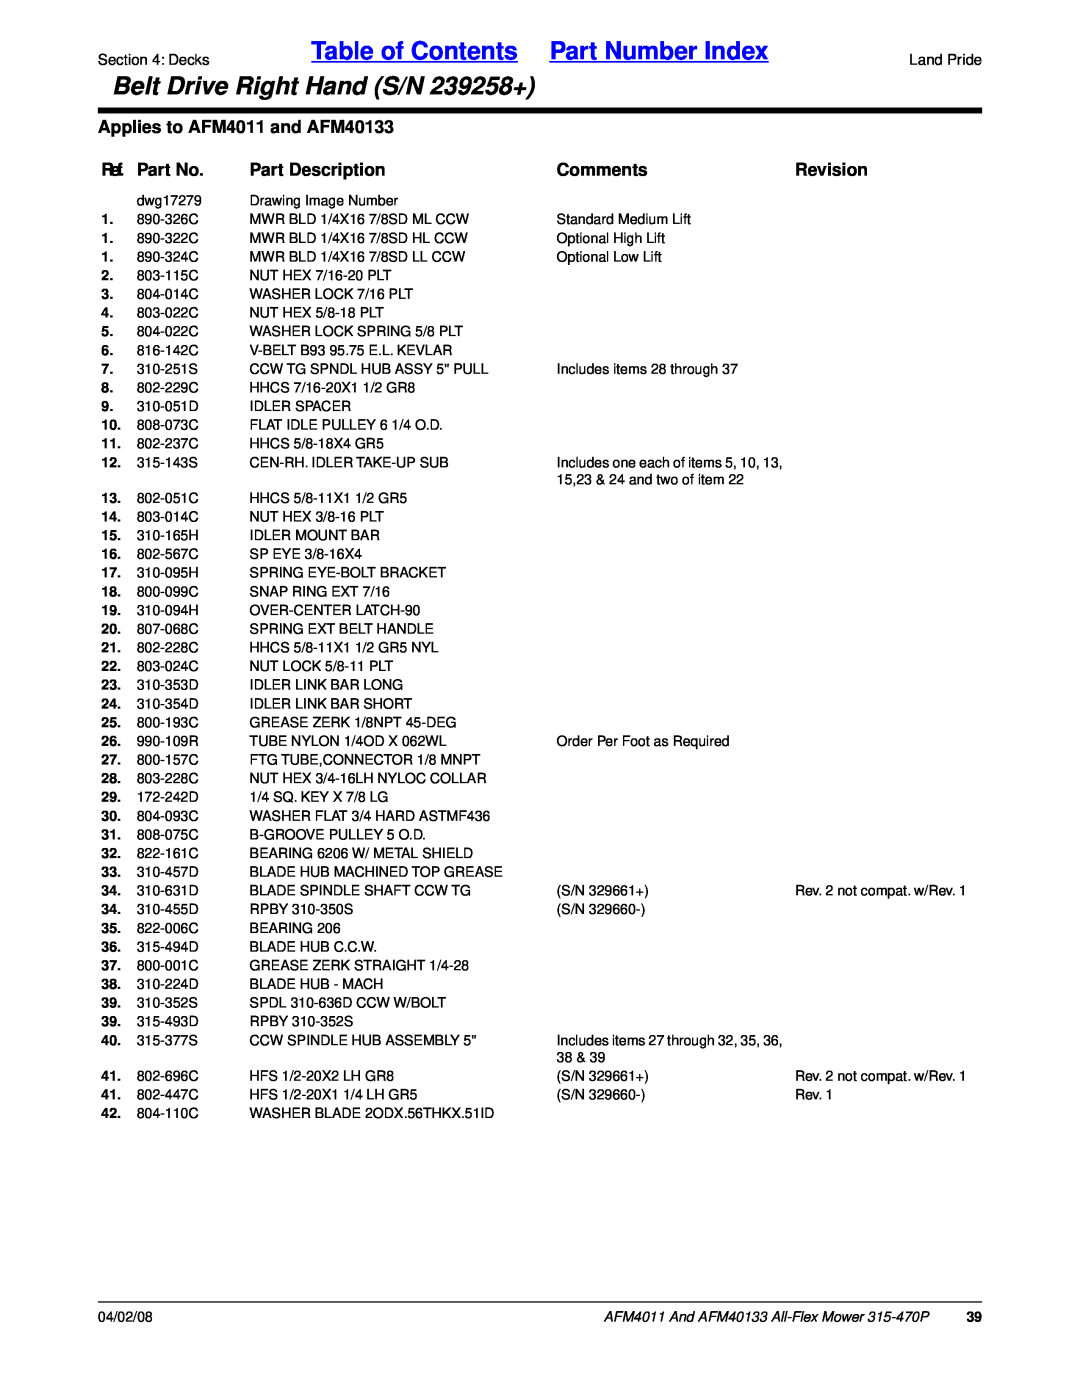 Land Pride AFM40133 Table of Contents Part Number Index, Belt Drive Right Hand S/N 239258+, Ref. Part No, Part Description 